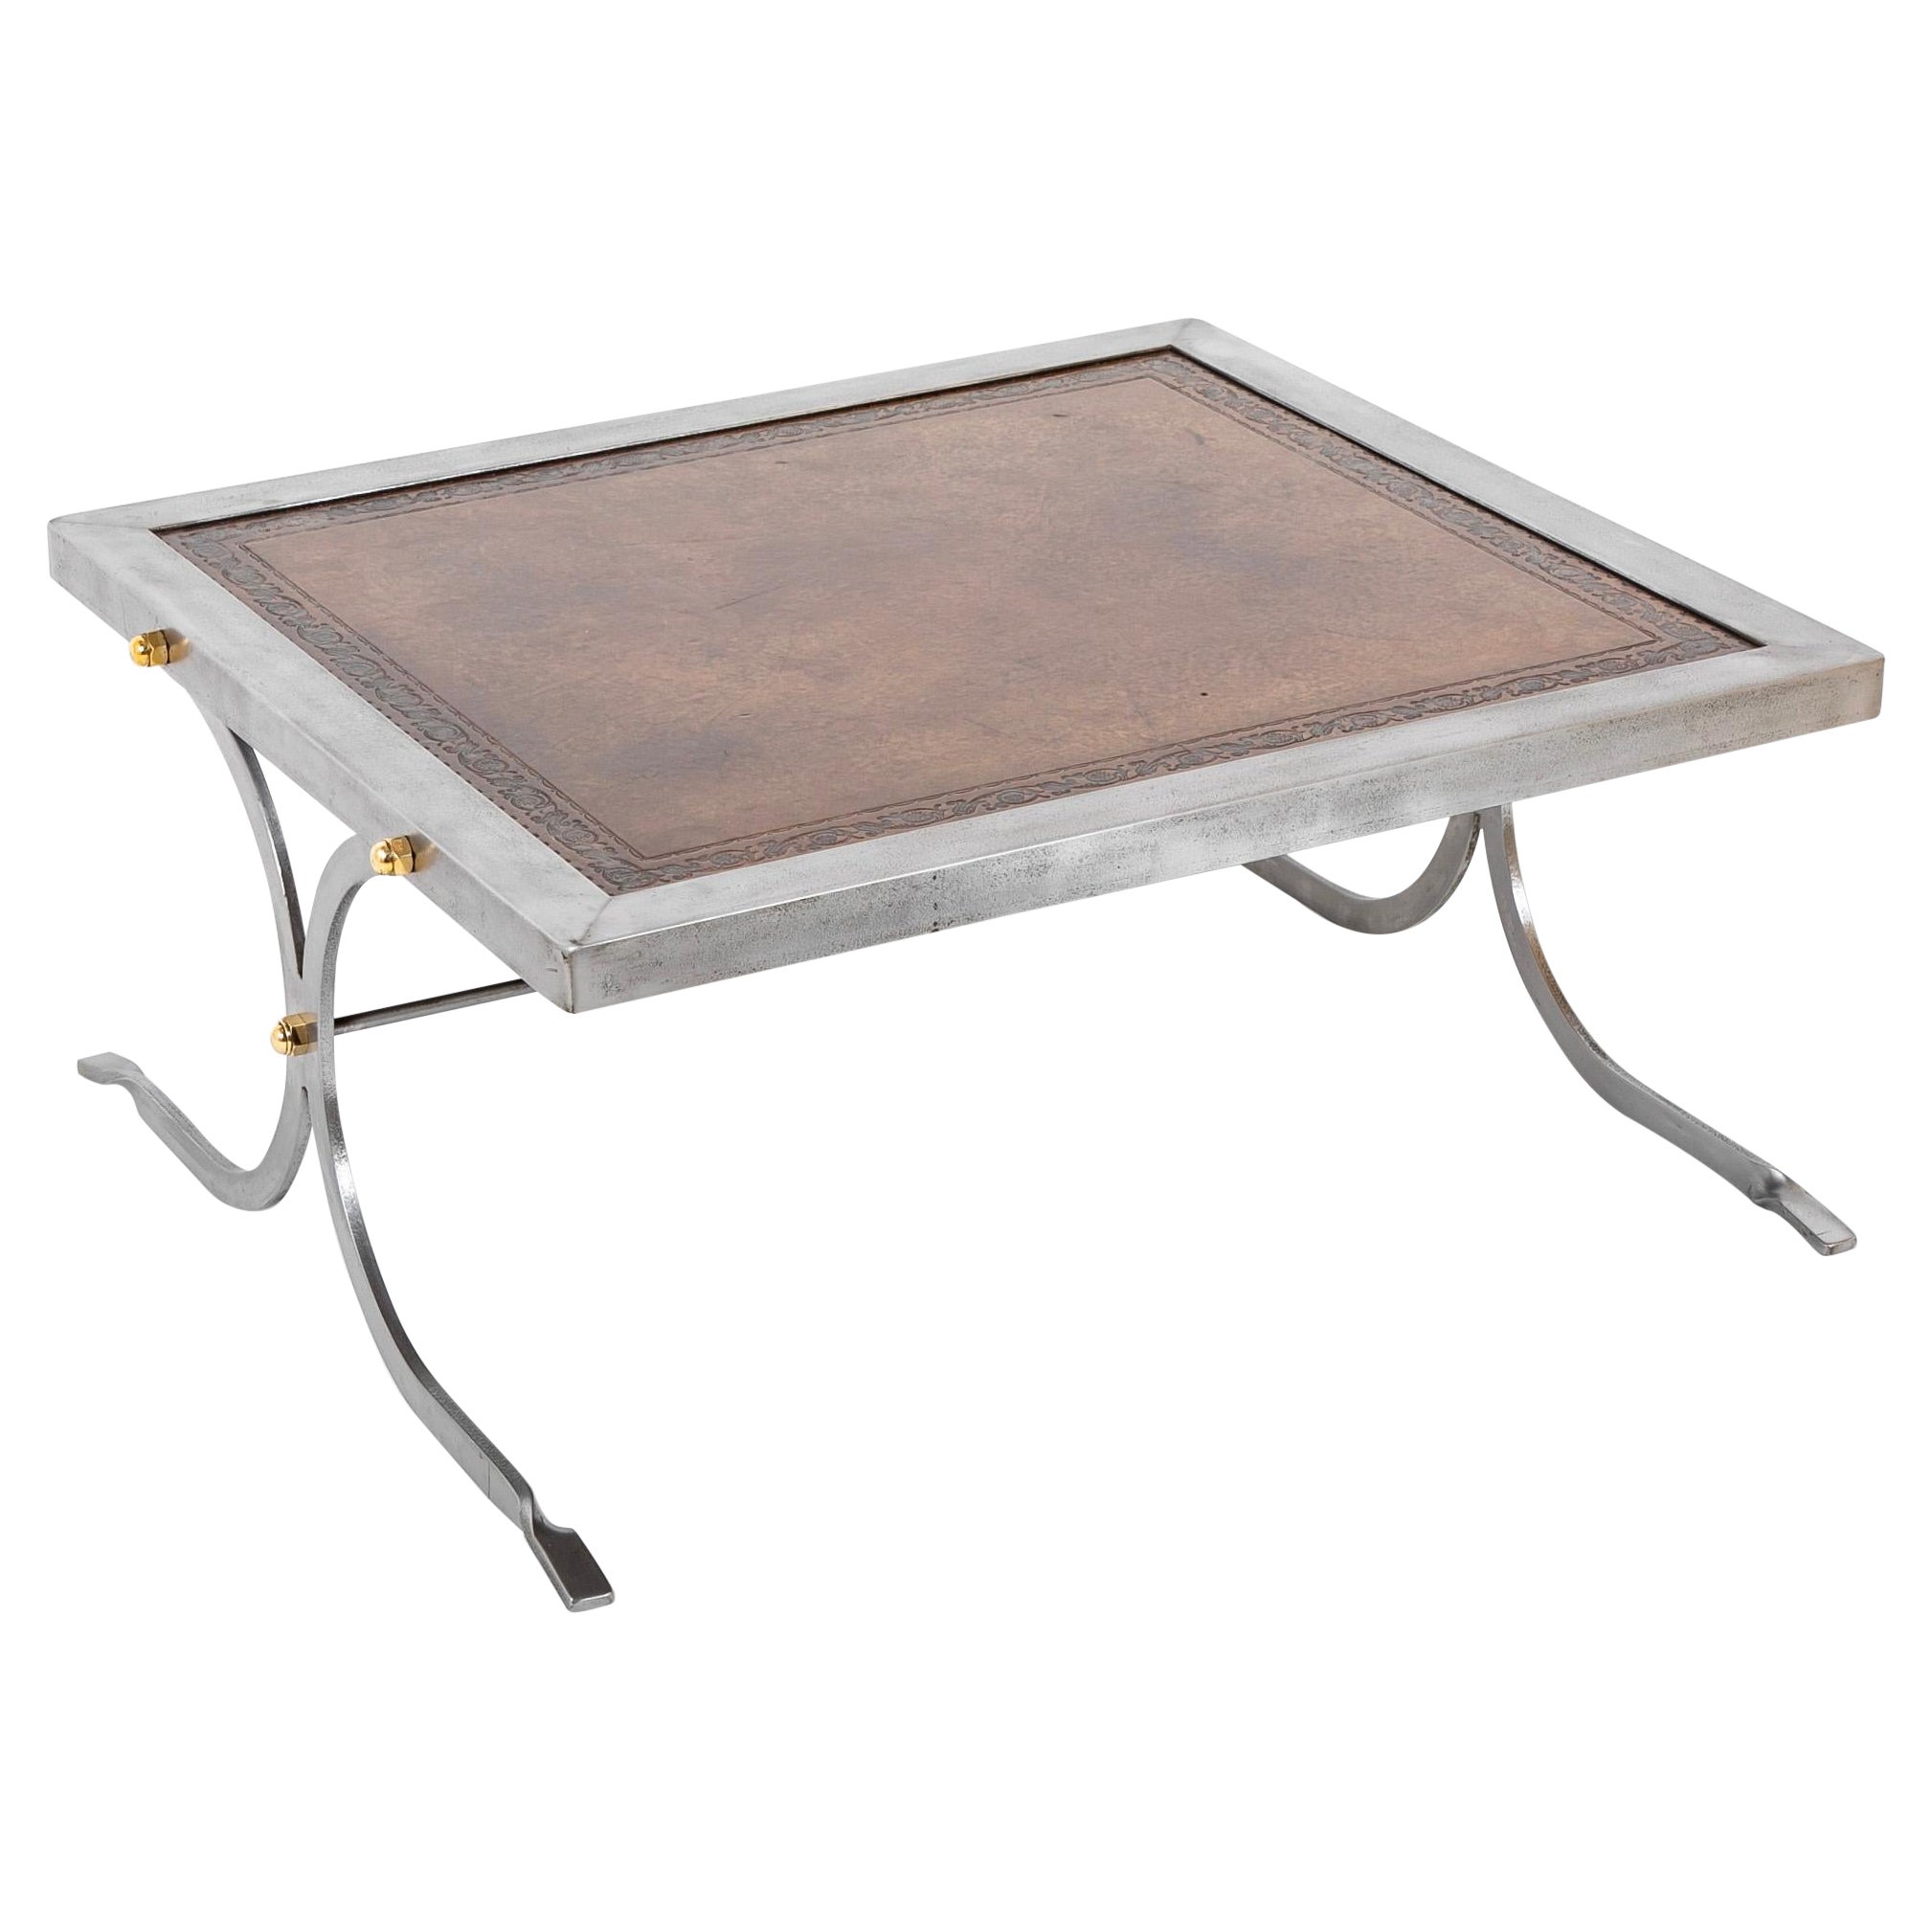 Table basse en fer forgé, laiton et cuir de style mi-siècle moderne